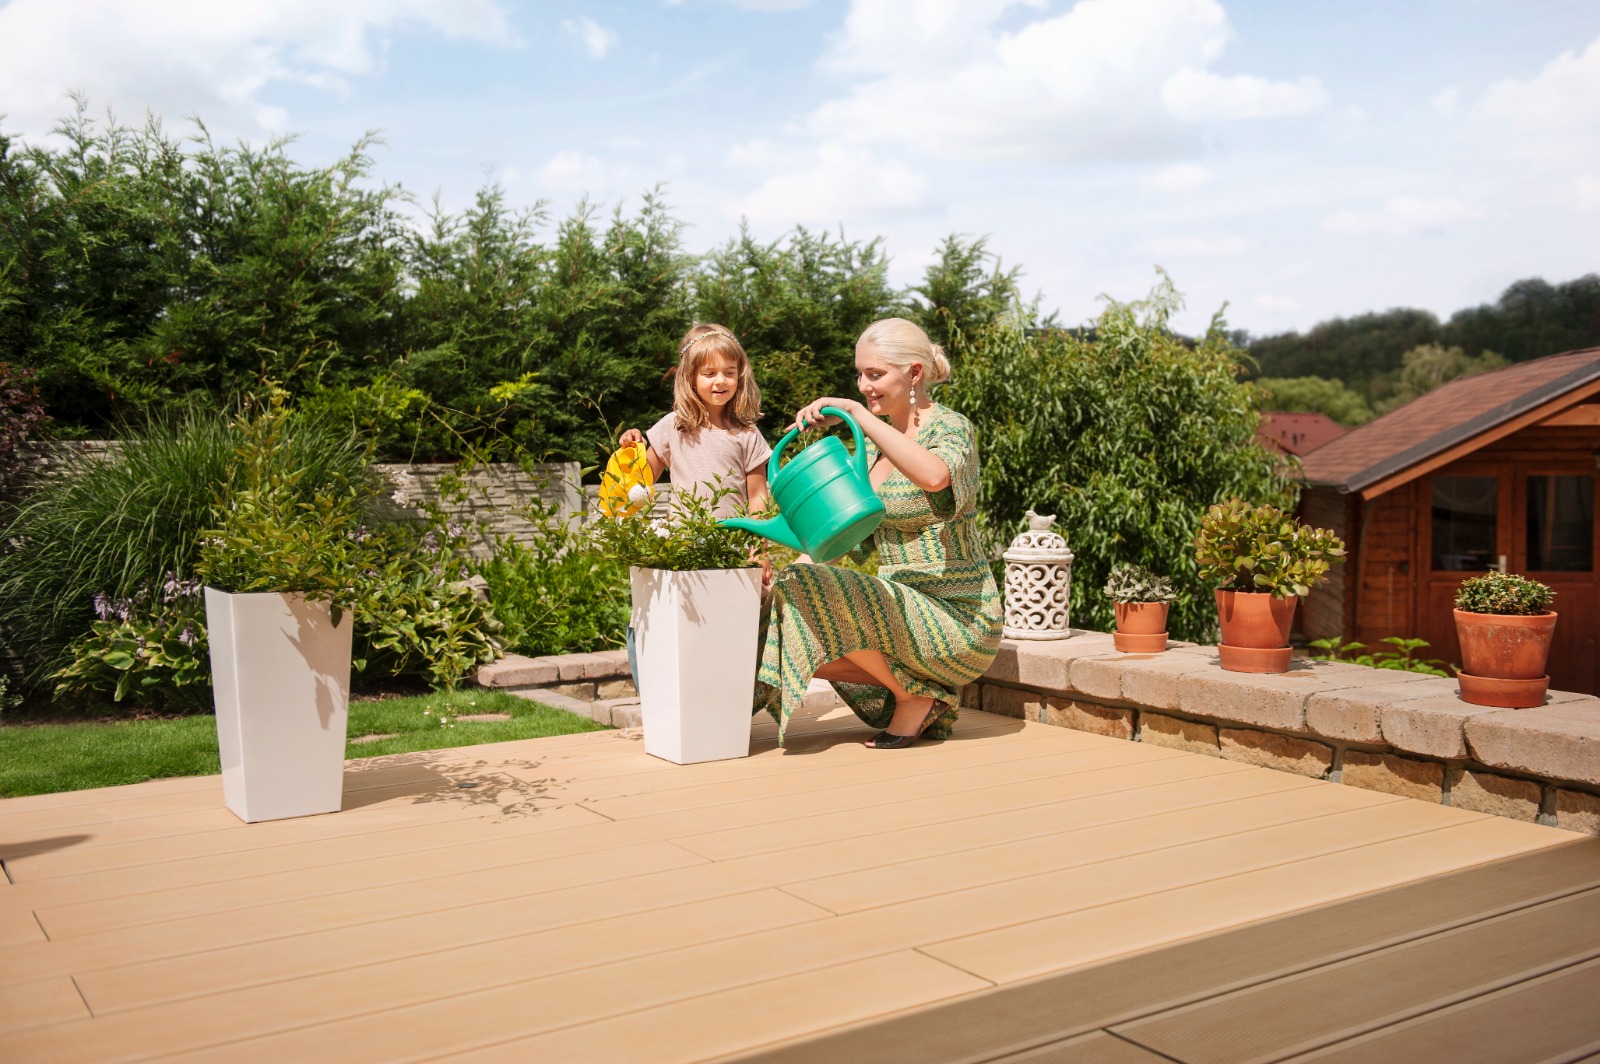 Kompozitná terasa v záhrade a babka s diečatkom polievajúce rastliny